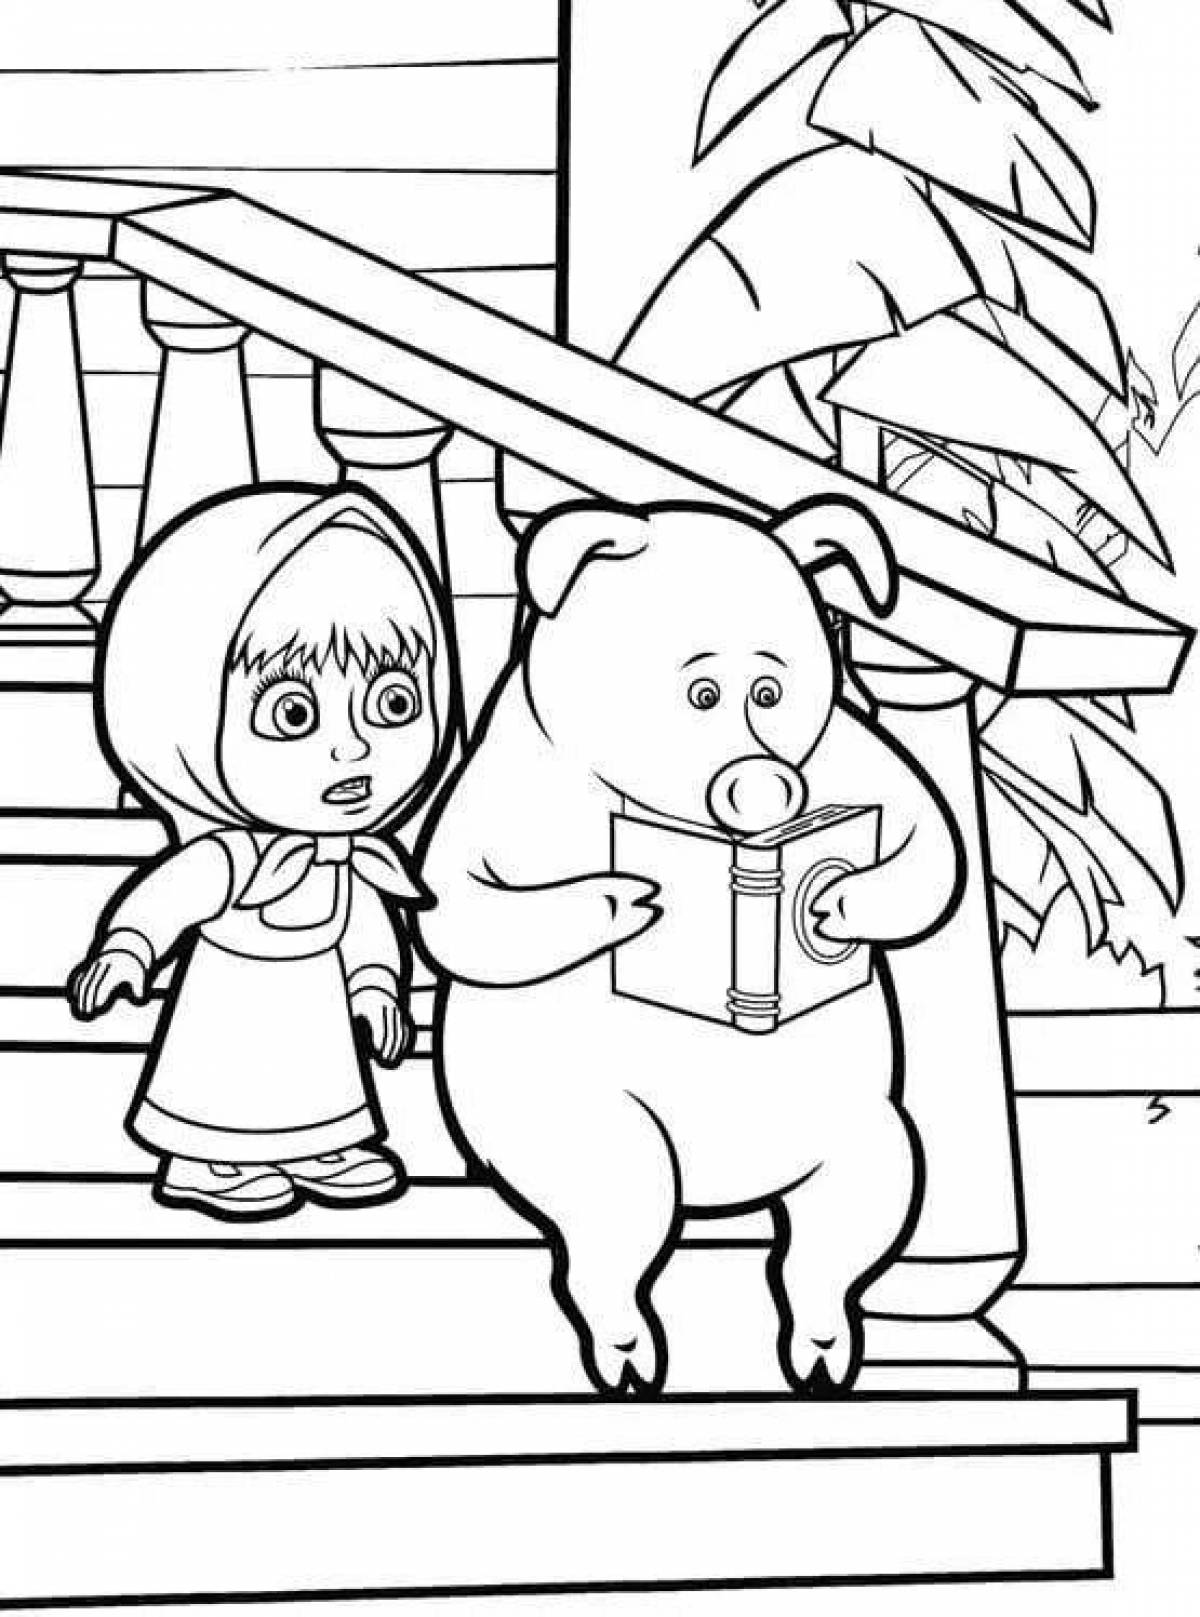 Charming masha and bear drawing